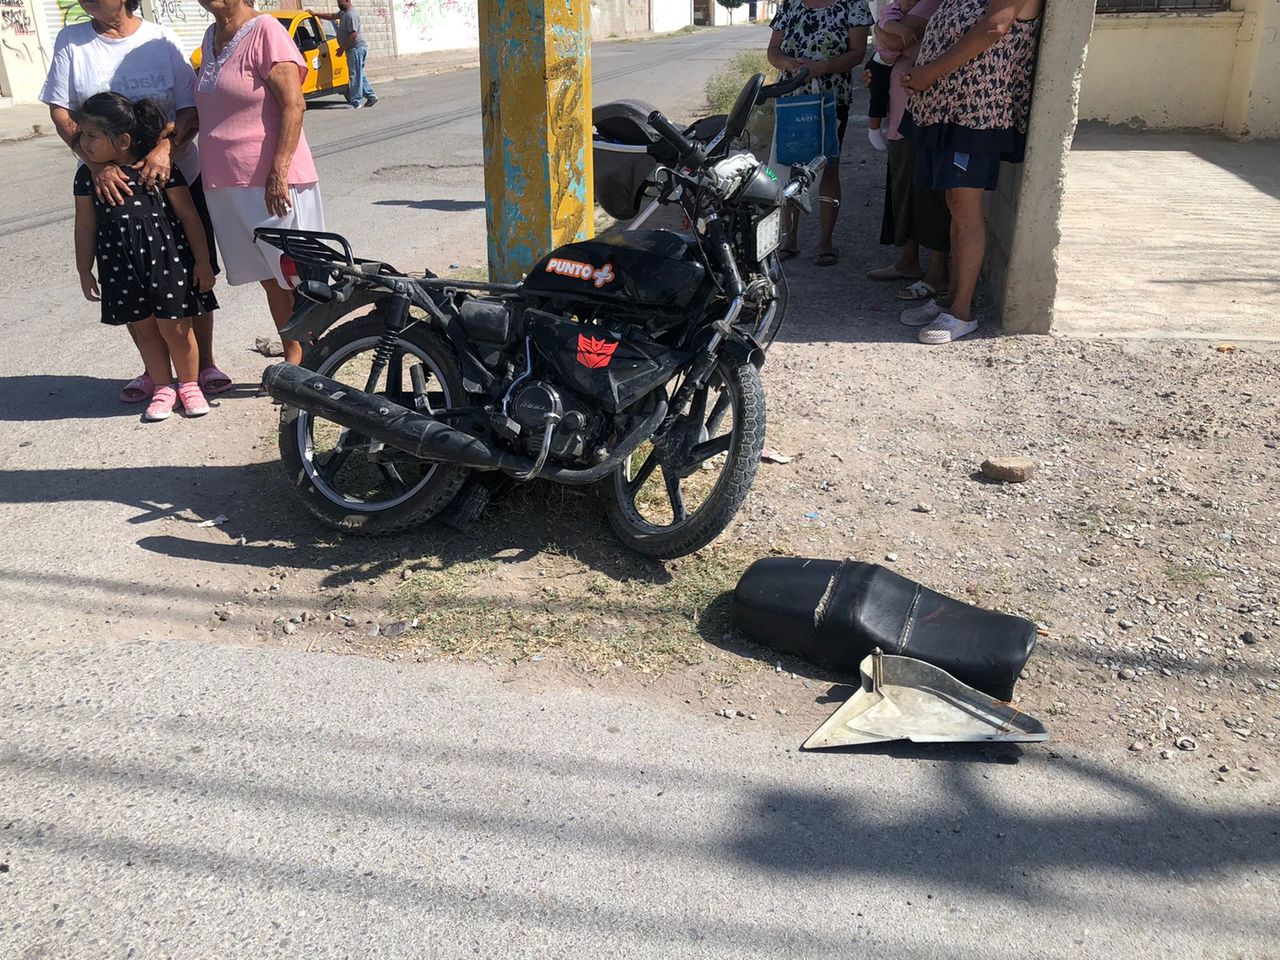 El conductor del tractocamión no realizó el alto correspondiente e impactó la motocicleta en la que viajaban dos jóvenes.